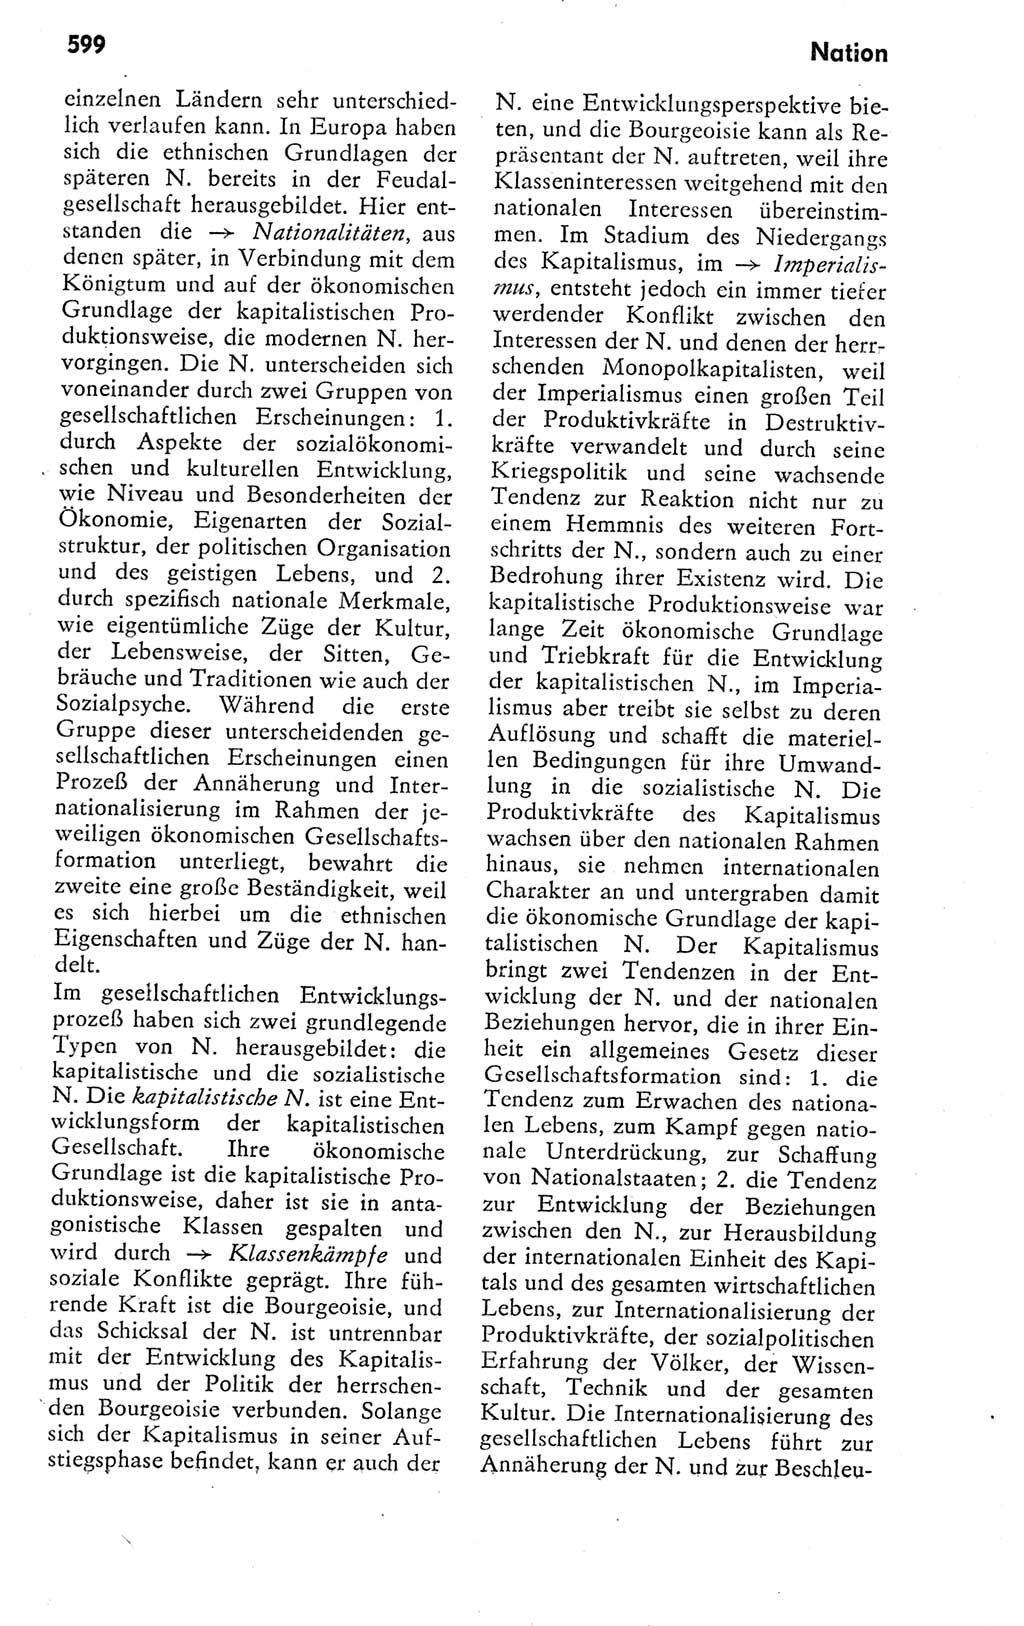 Kleines politisches Wörterbuch [Deutsche Demokratische Republik (DDR)] 1978, Seite 599 (Kl. pol. Wb. DDR 1978, S. 599)